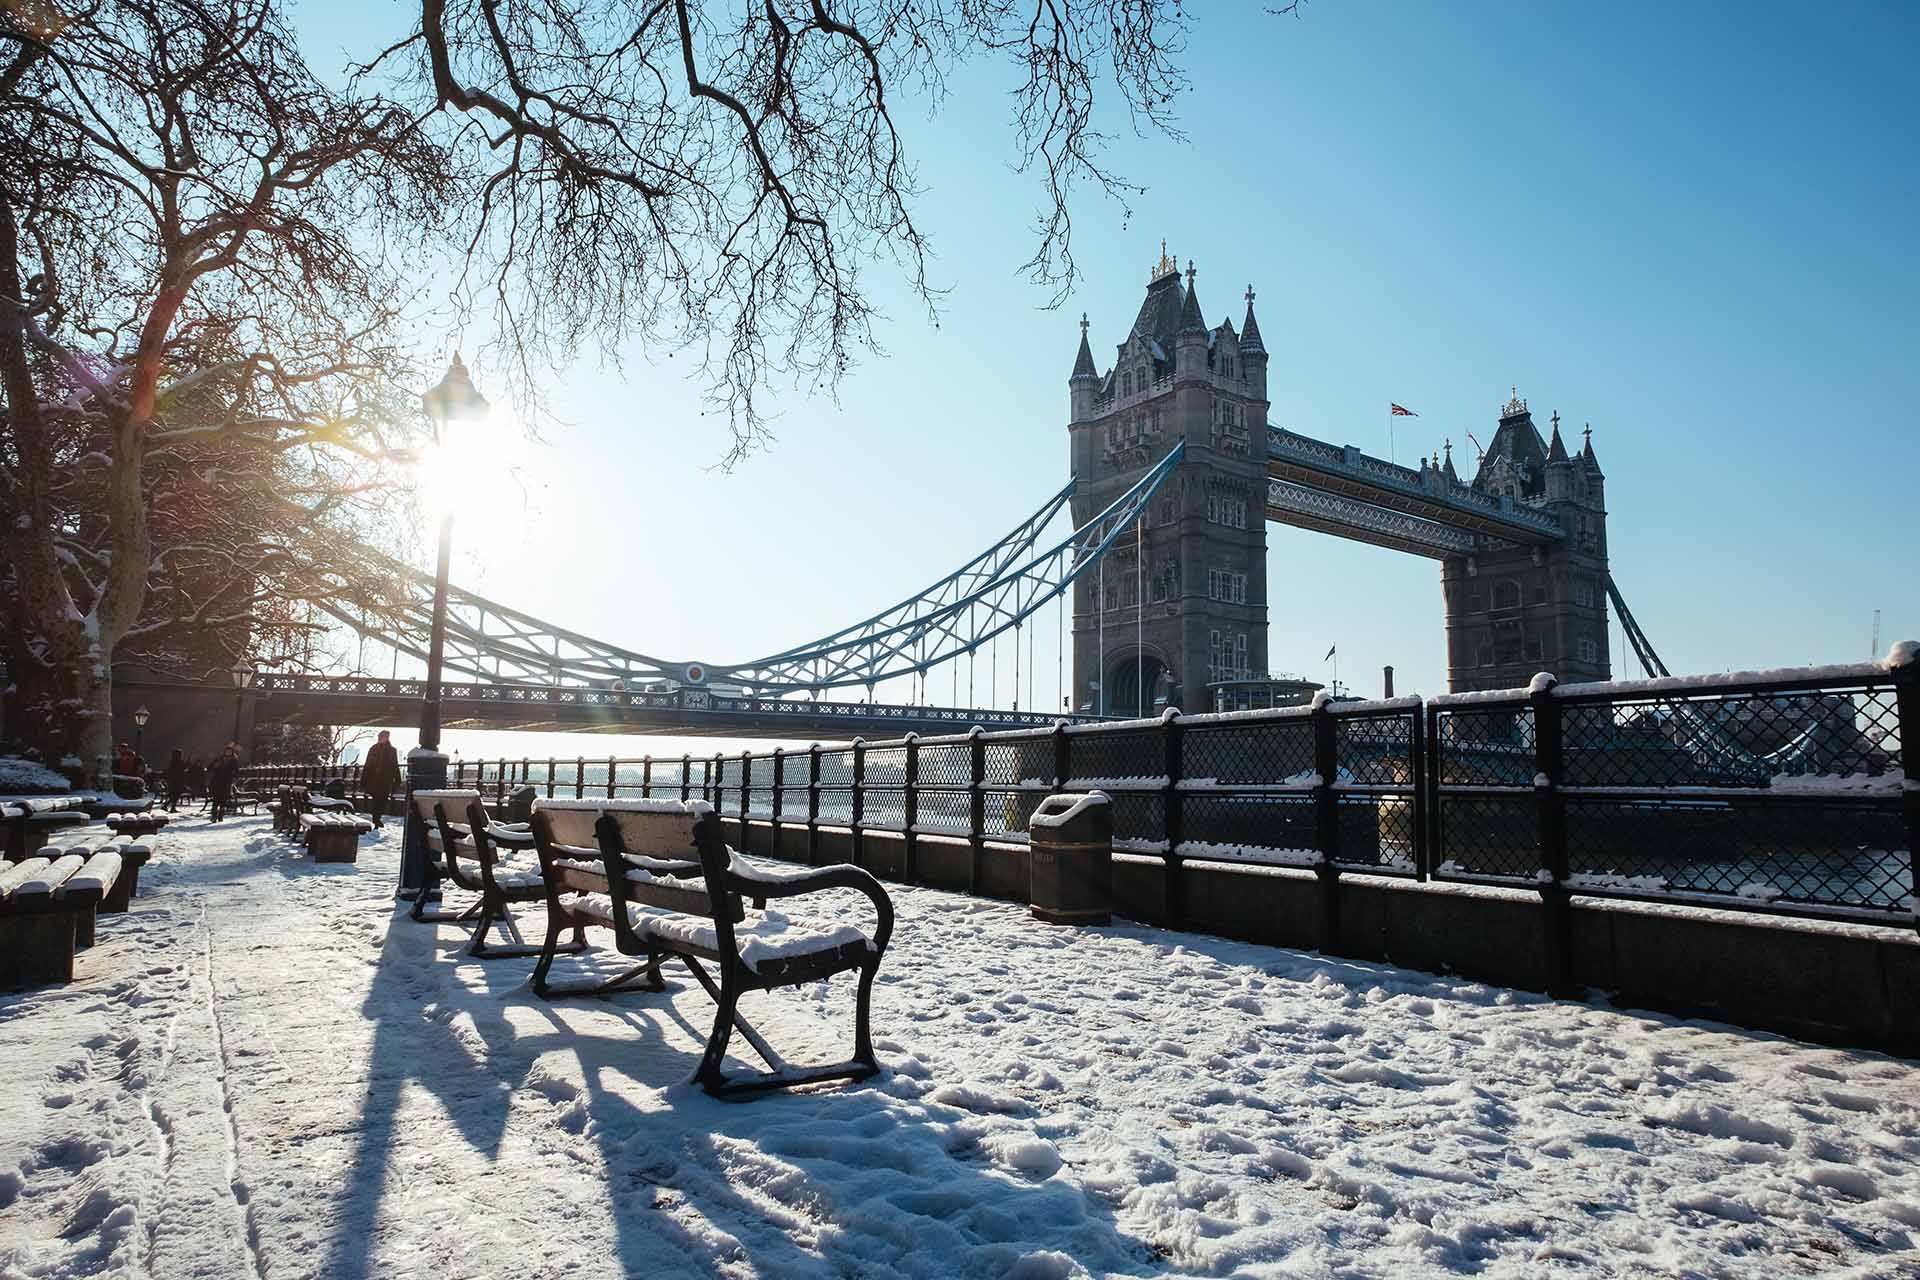 Activities in London in Winter